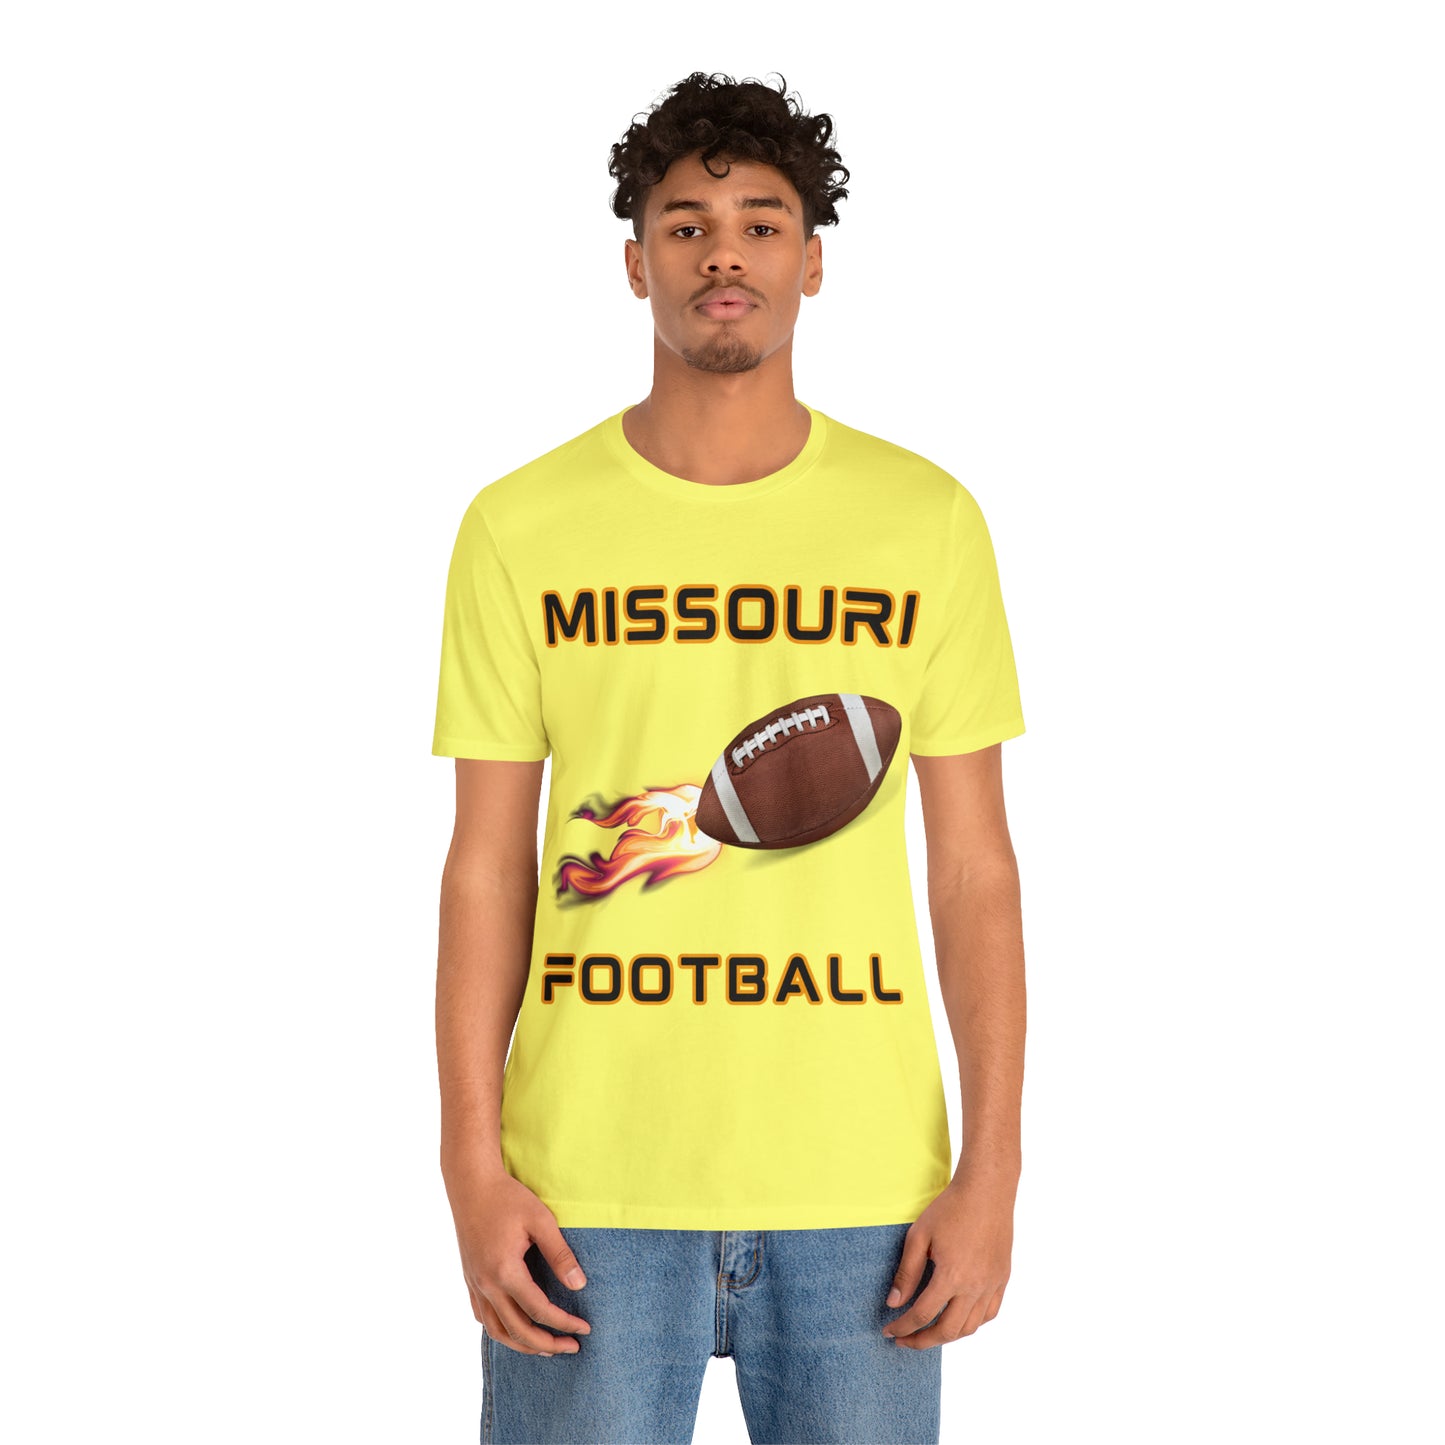 Missouri Flame Football Customizable Unisex Jersey Short Sleeve Tee